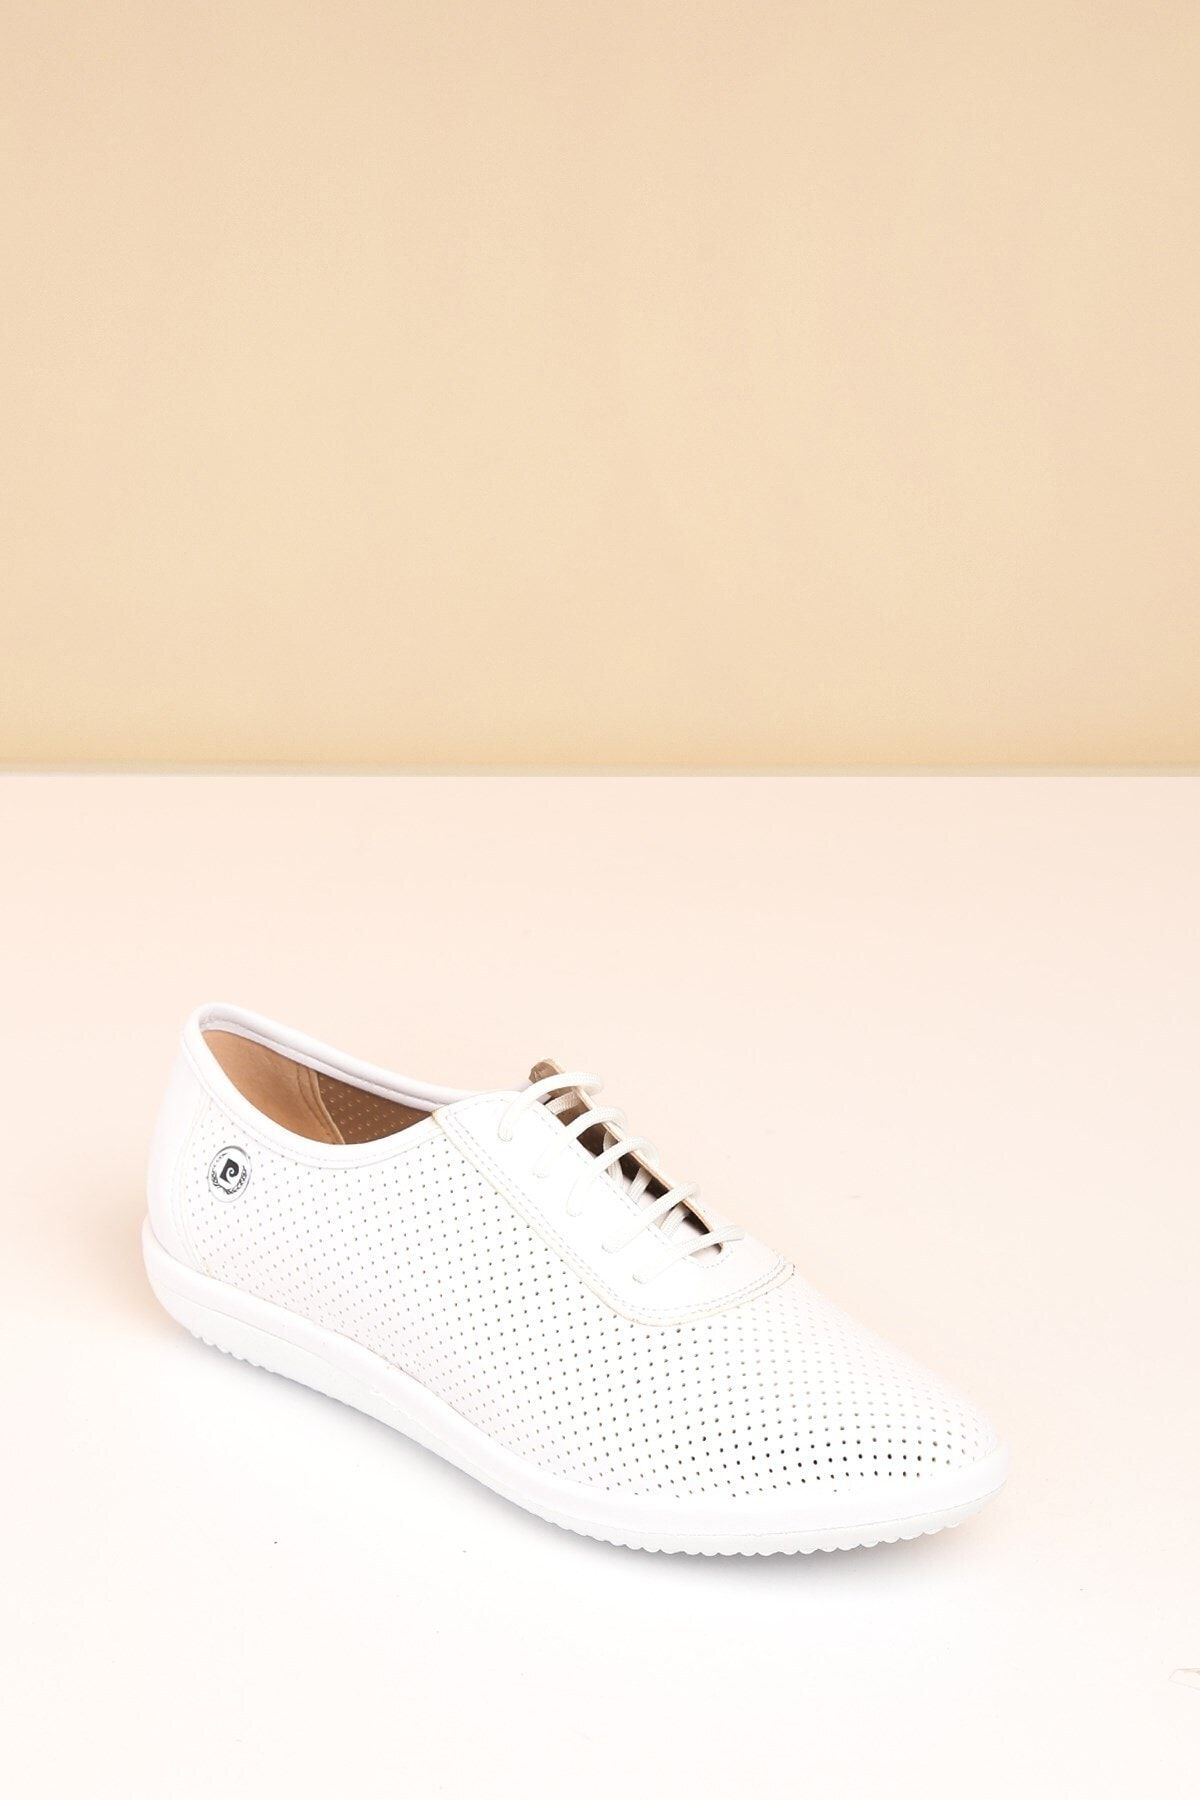 Pierre Cardin PC-50104 Beyaz Kadın Ayakkabı